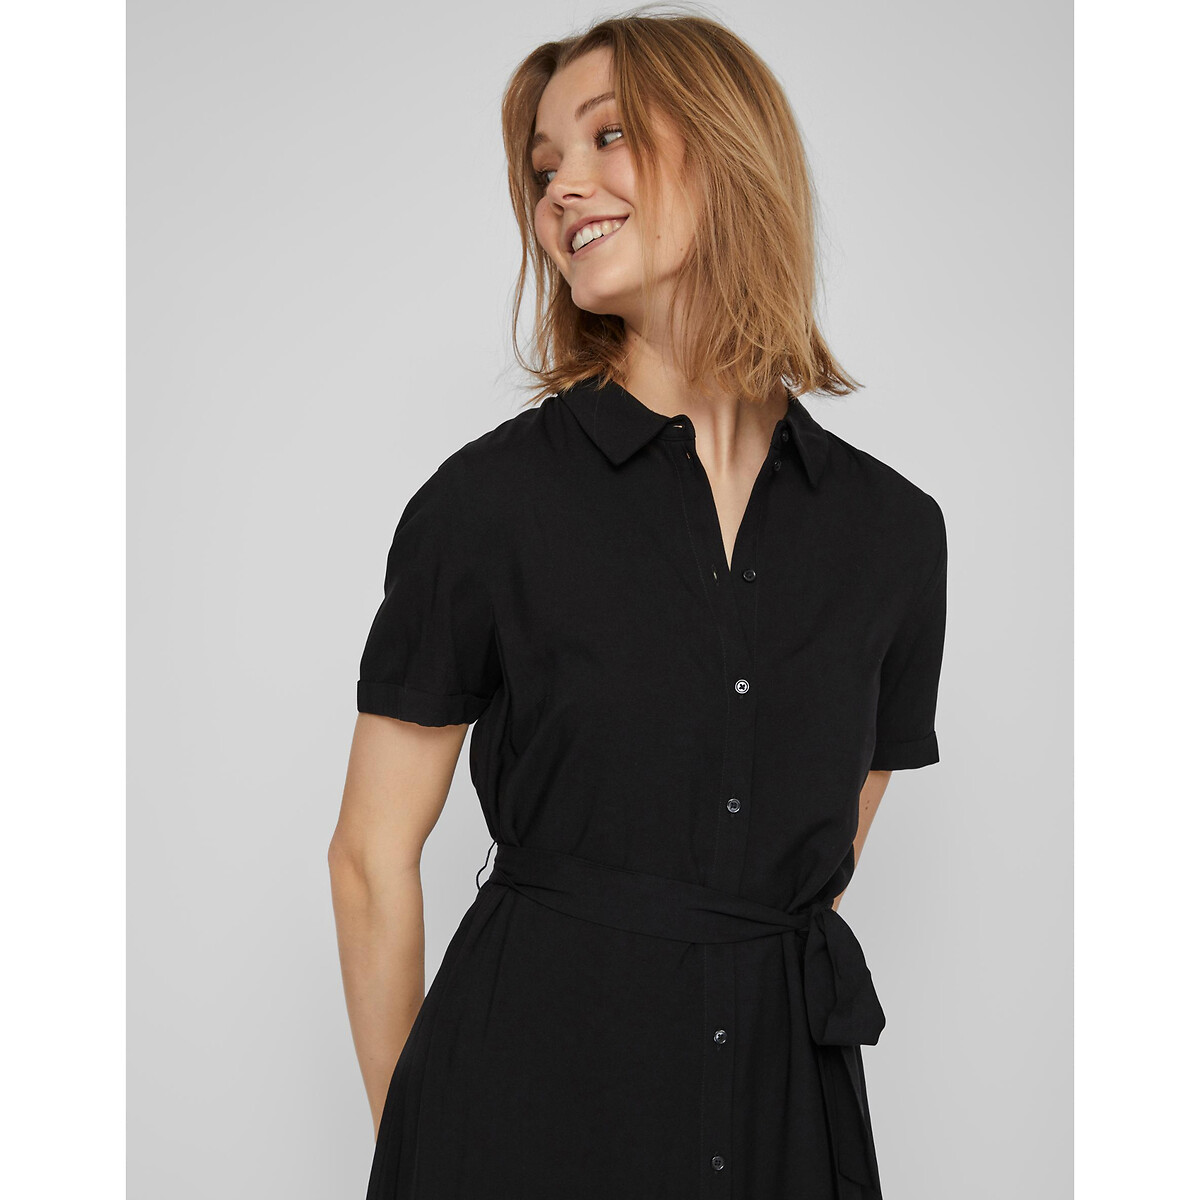 Платье-рубашка Короткие рукава с завязками 48 черный LaRedoute, размер 48 - фото 2